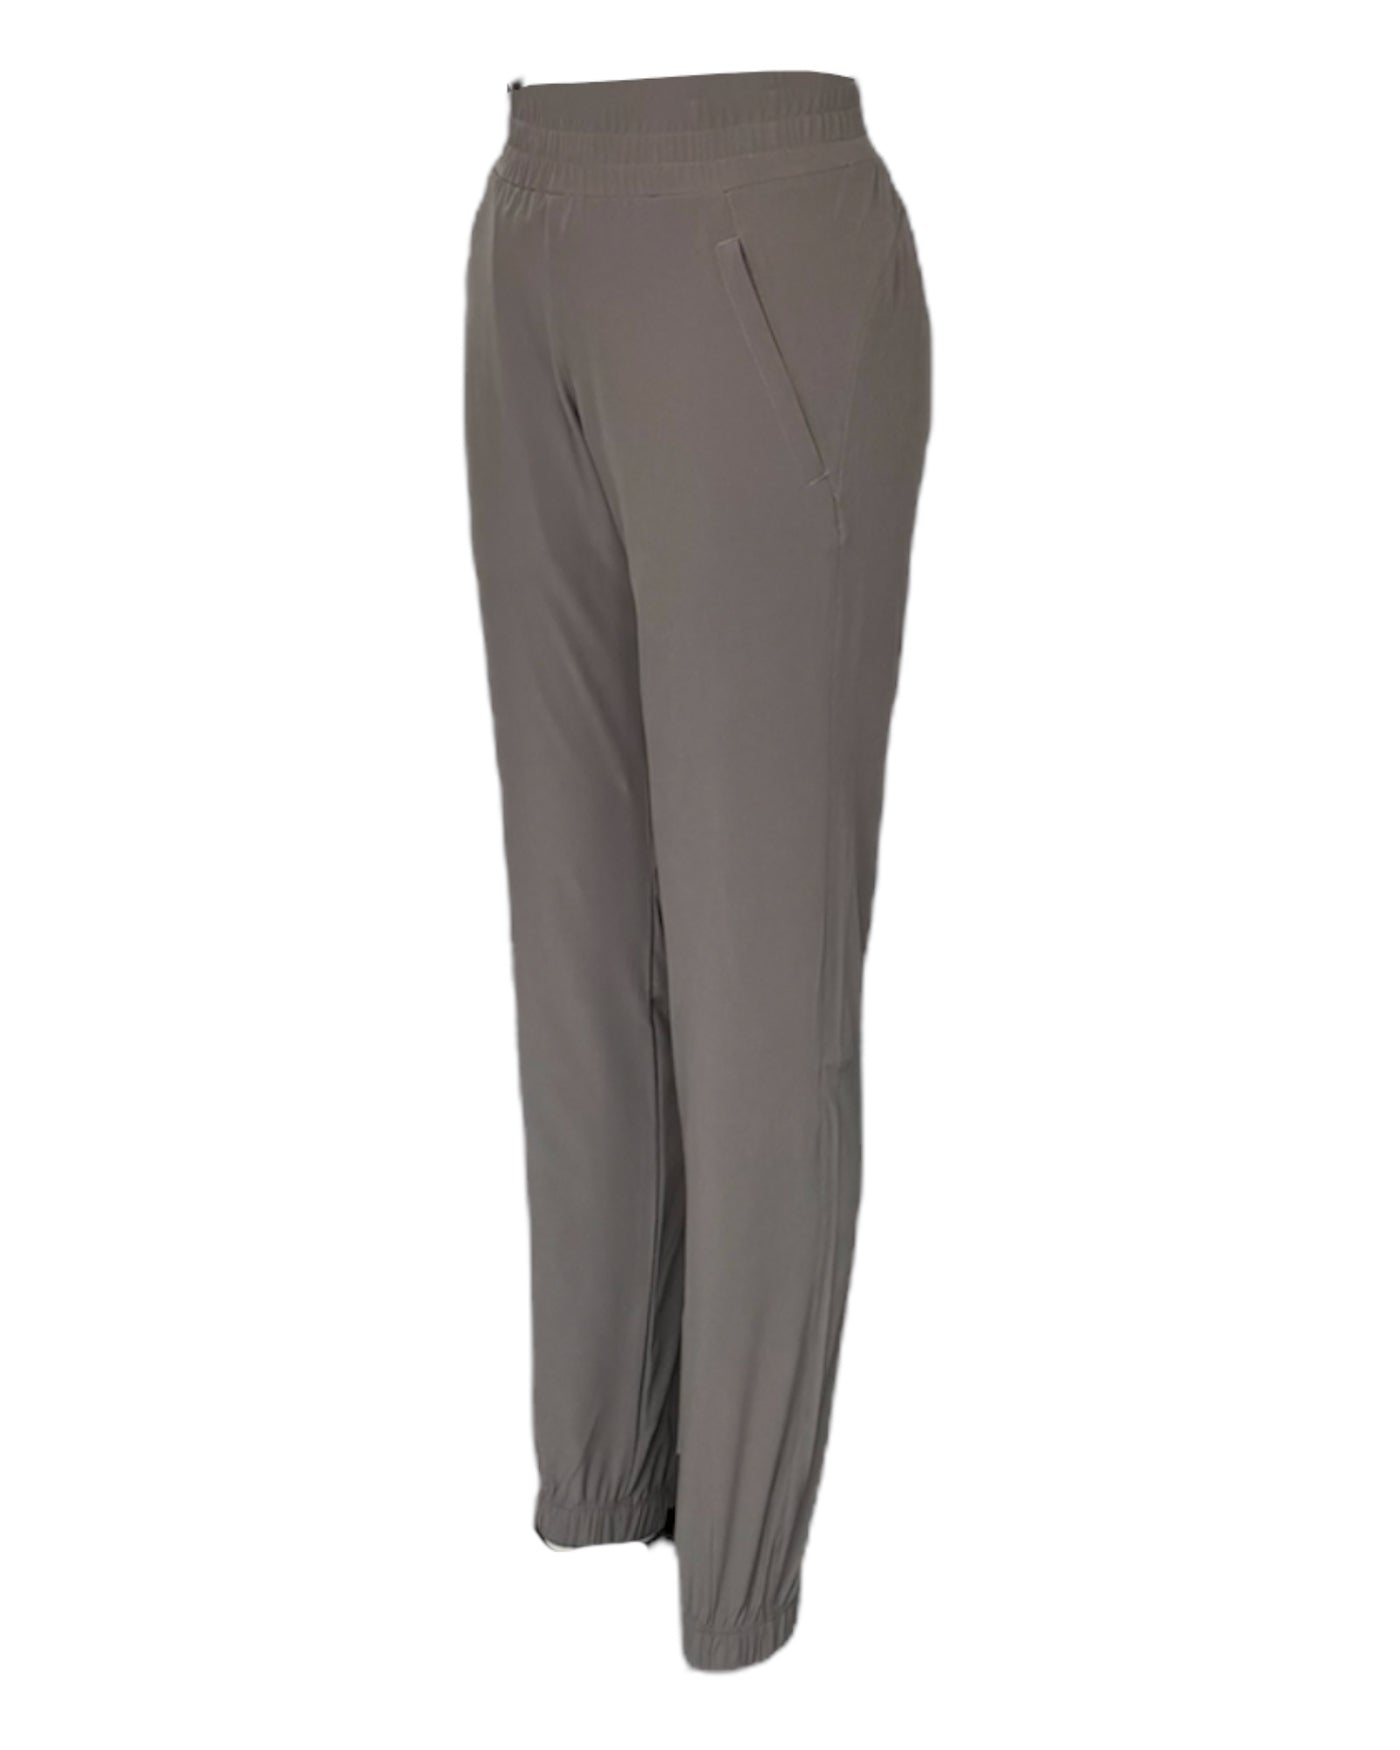 Un pantalon taupe extensible pour femme avec taille élastique avec cordon d'ajustement et élastique su bas de la jambe, idéal pour le voyage